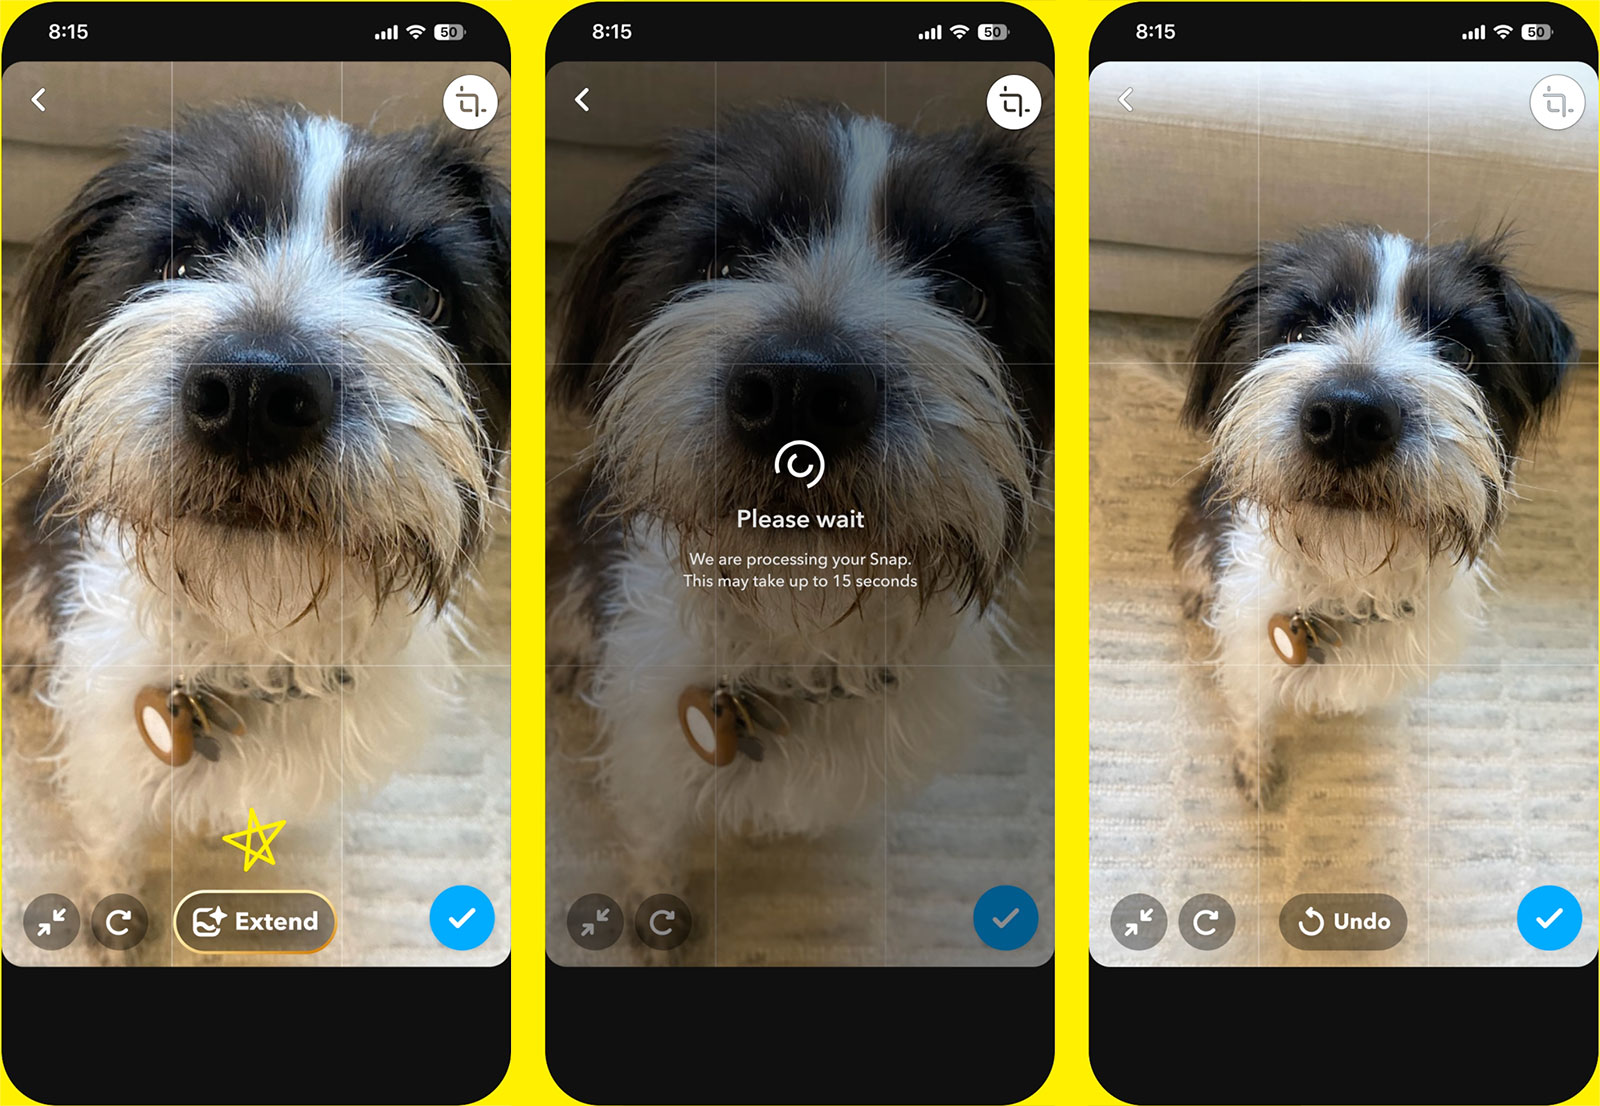 Snapchat+ prenumeranter kan nu använda AI för att skapa eller expandera bilder i appen